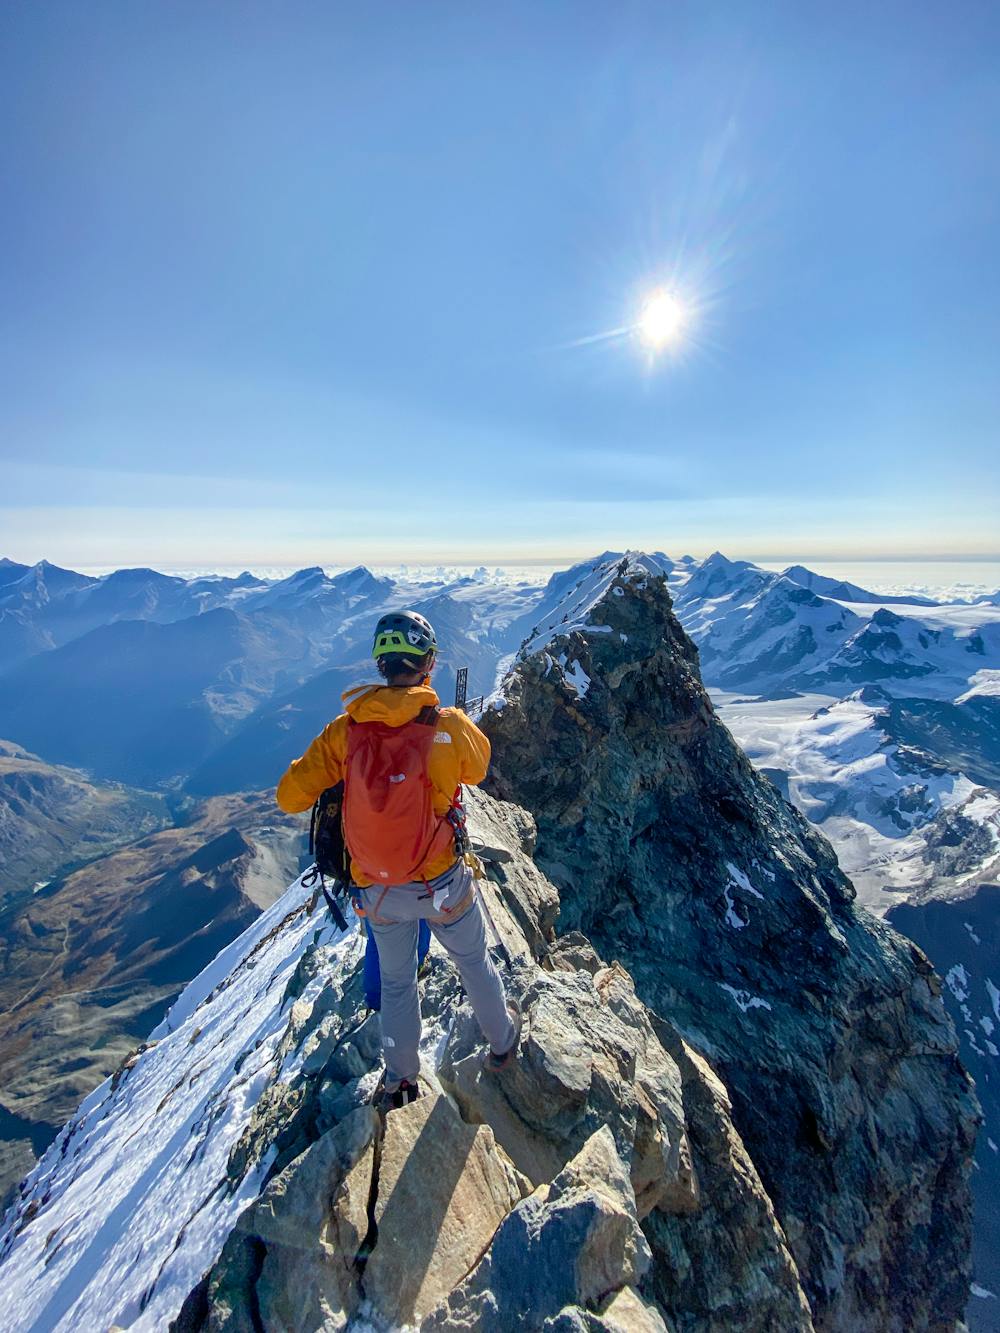 The summit of the Matterhorn